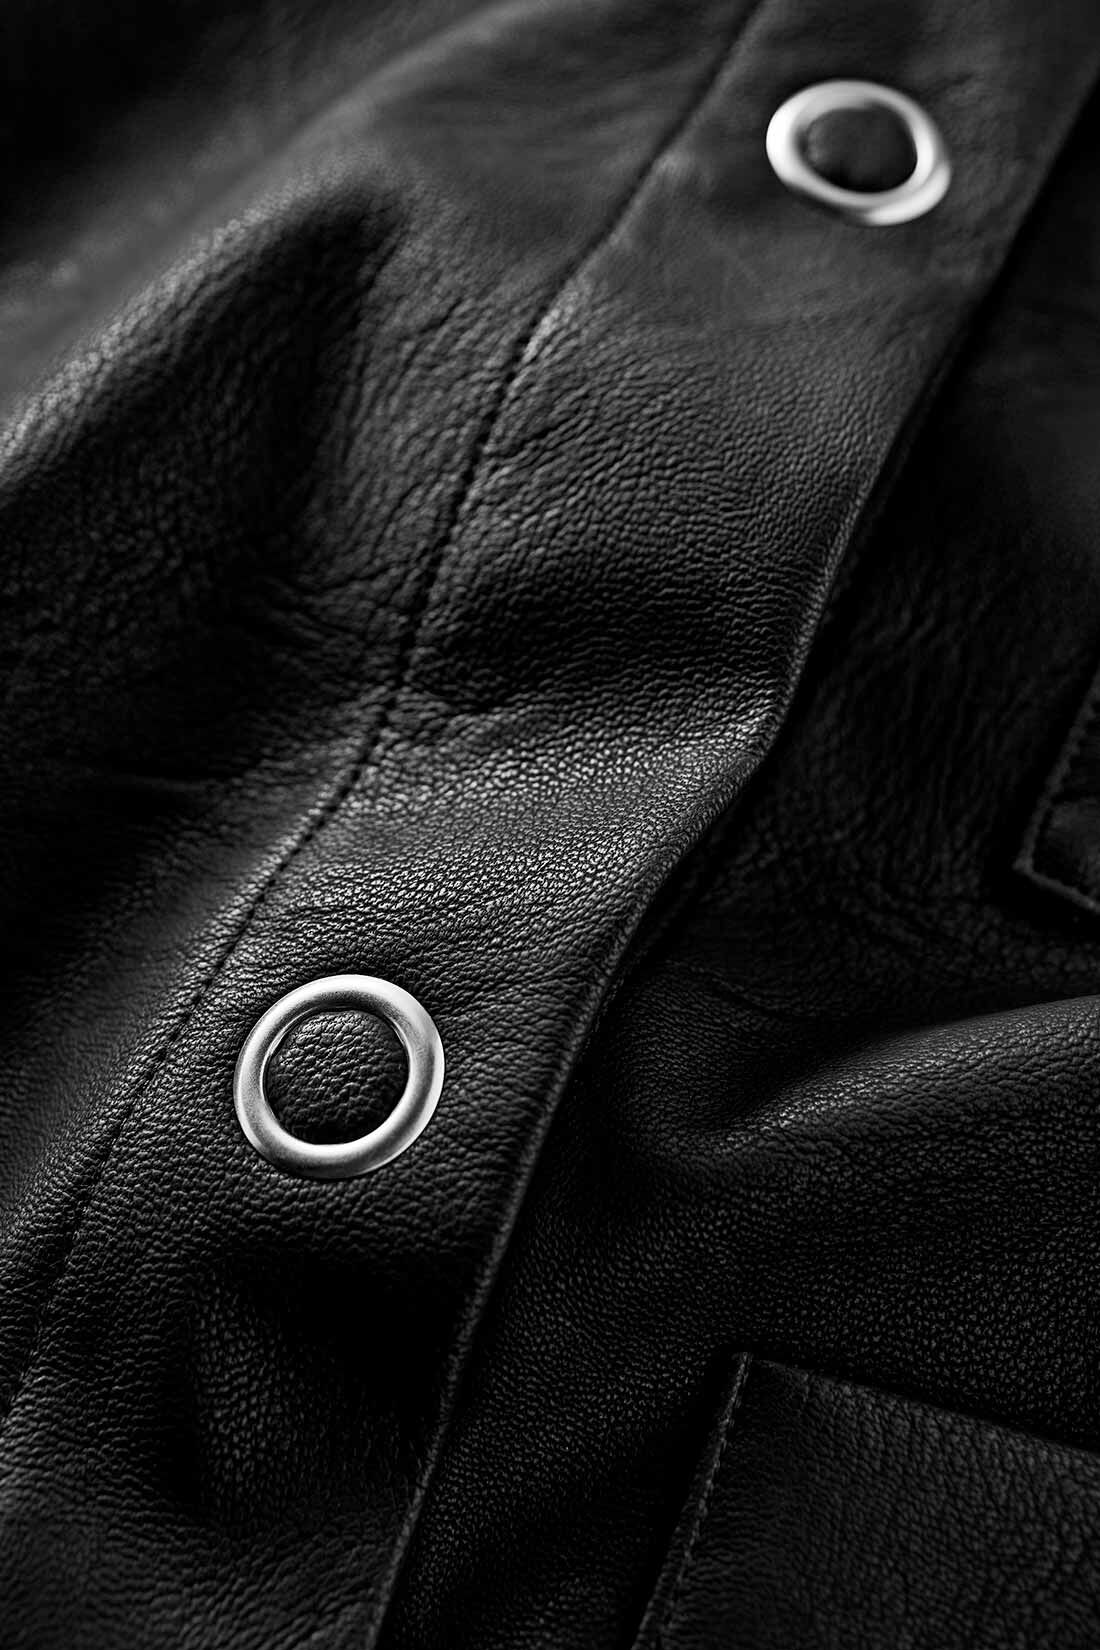 MEDE19F|MEDE19F　エコレザーのオーバーカバーオール〈ブラック〉|軽量で、マットな質感が上品なエコレザー素材。直径21�oのスナップボタンがアクセントに。